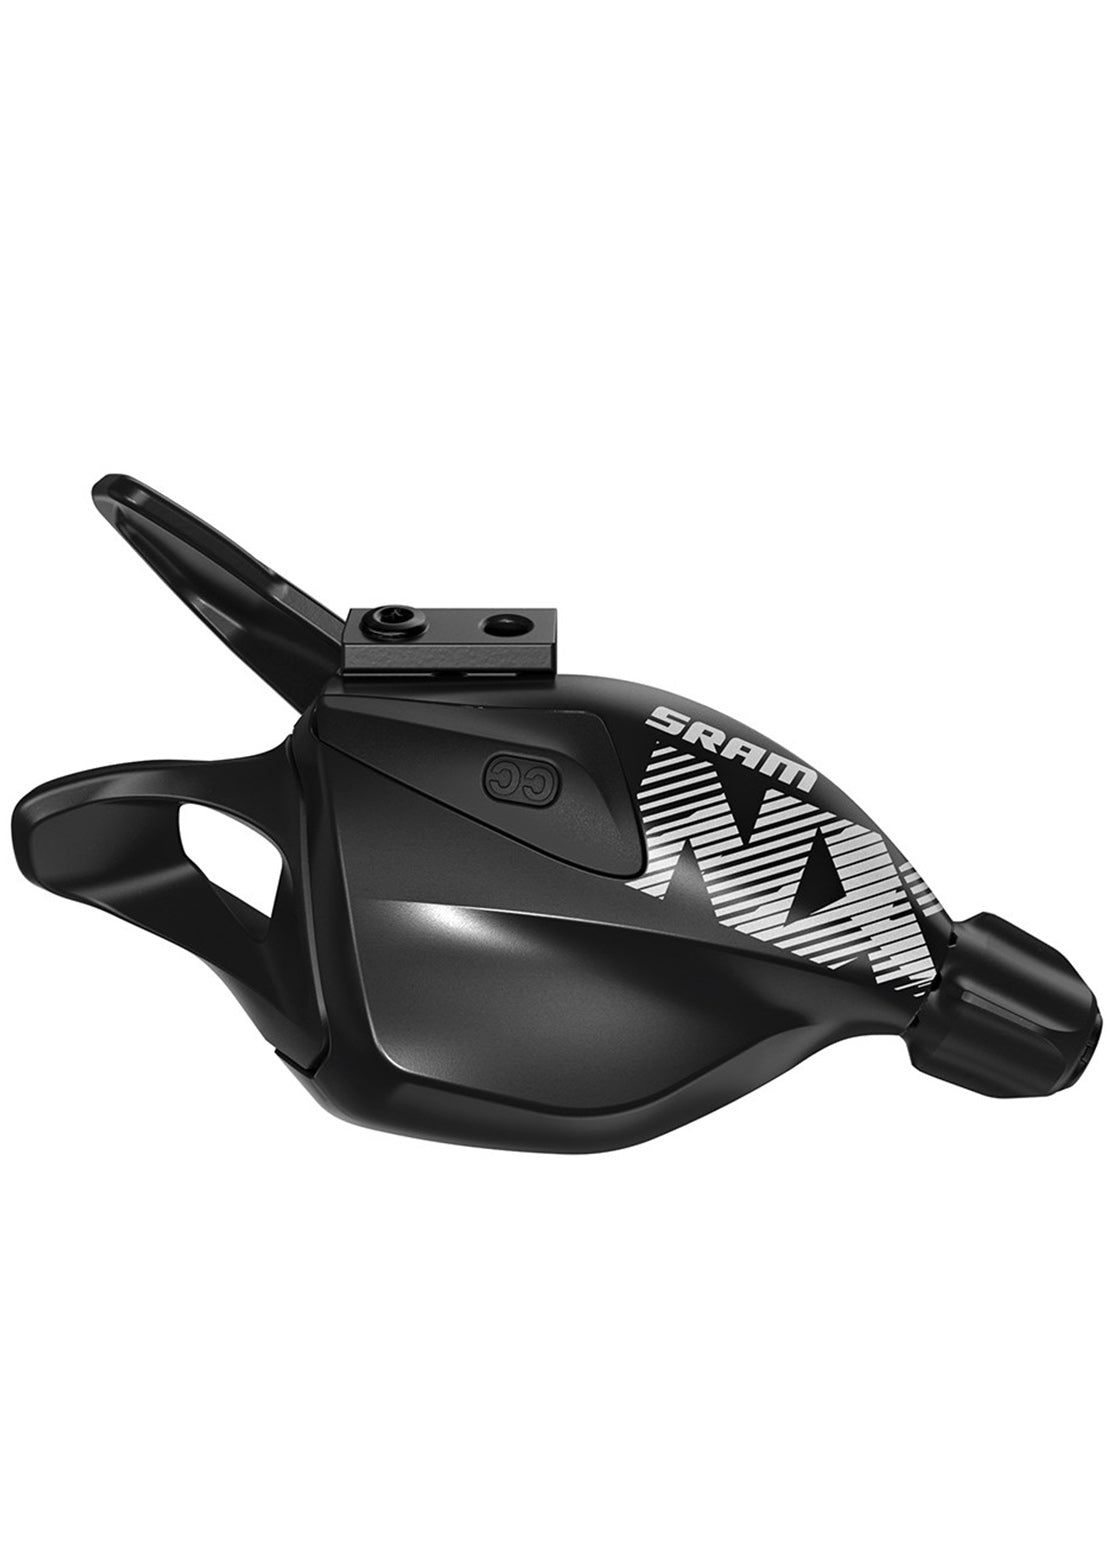 SRAM NX Eagle 12-Speed Rear Trigger Shifter Black